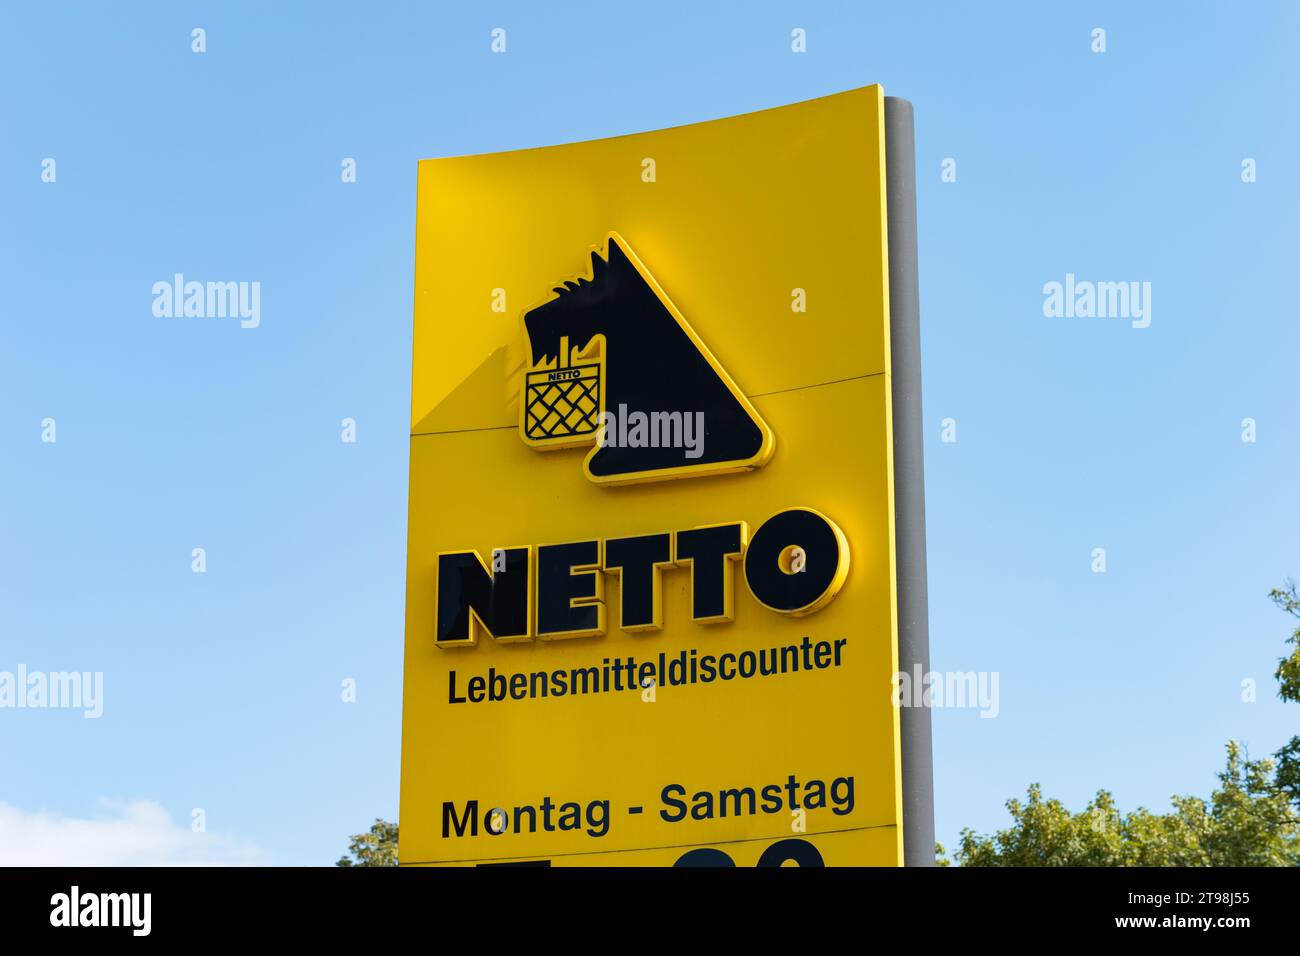 Netto Lebensmitteldiscounter (Lebensmitteldiscounter) Schild. Ein schwarzer Hund mit einem Warenkorb ist Teil des Logos. Die Lebensmittelgeschäfte befinden sich in Deutschland Stockfoto